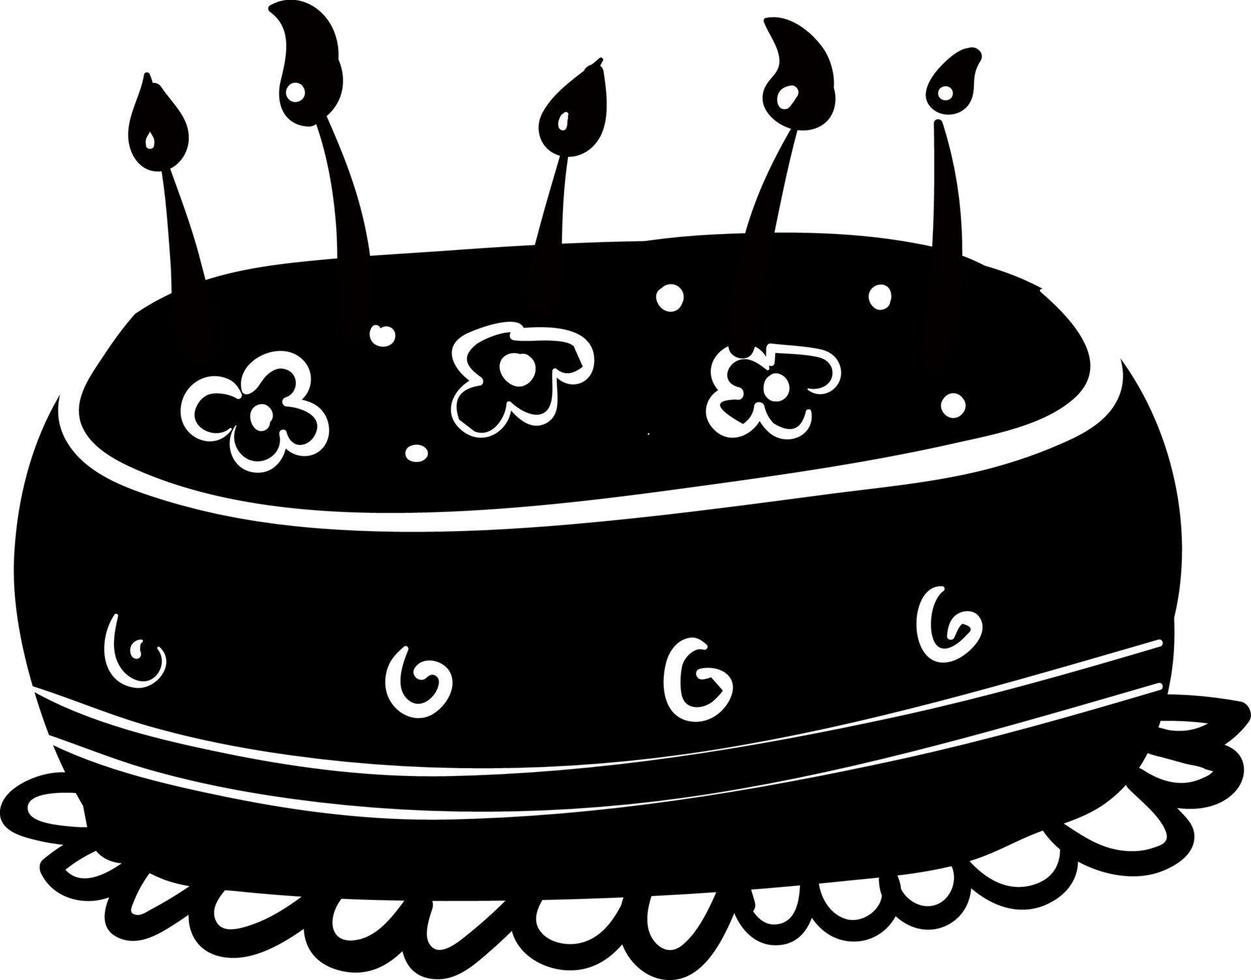 desenho de bolo de aniversário, ilustração, vetor em fundo branco.